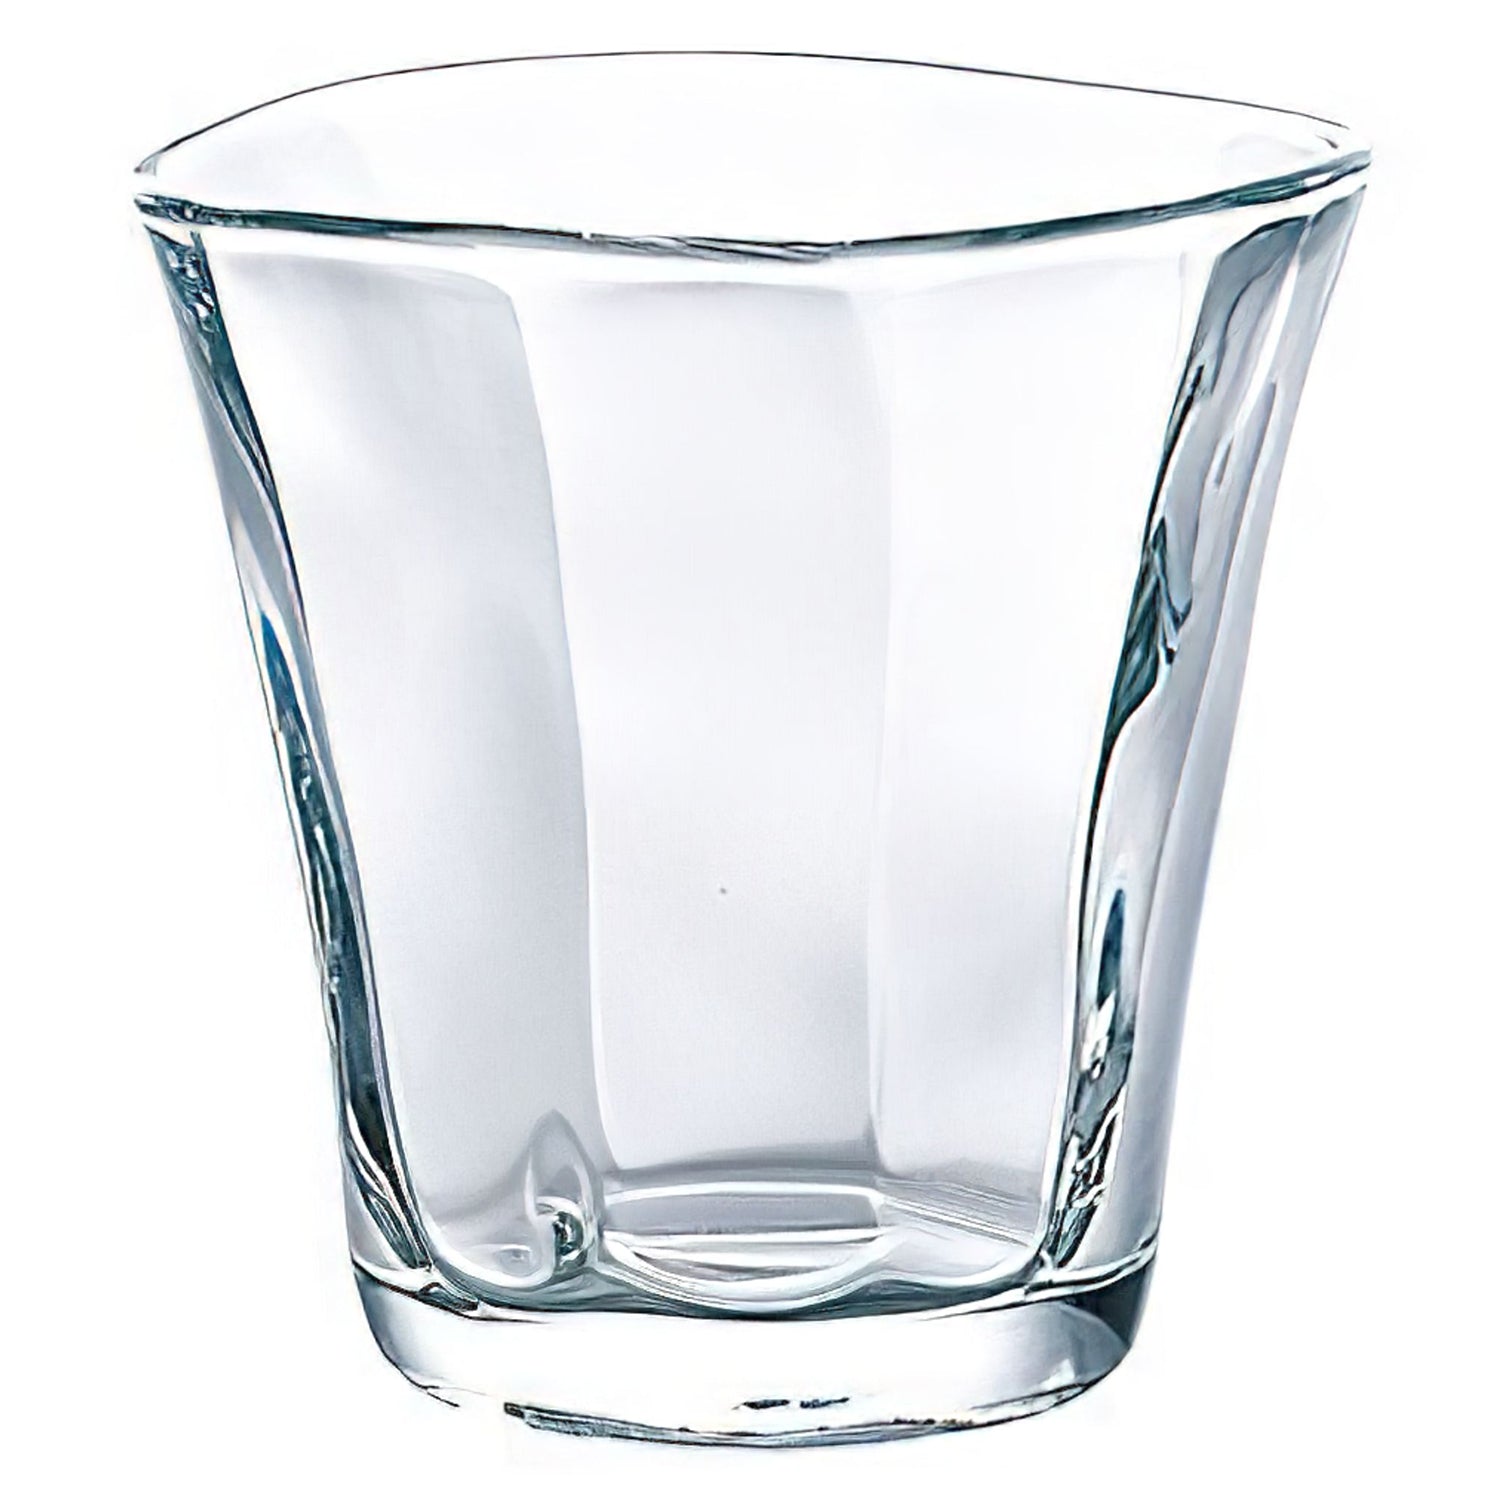 Aderia Sogi 3-Piece Glass Cup Set